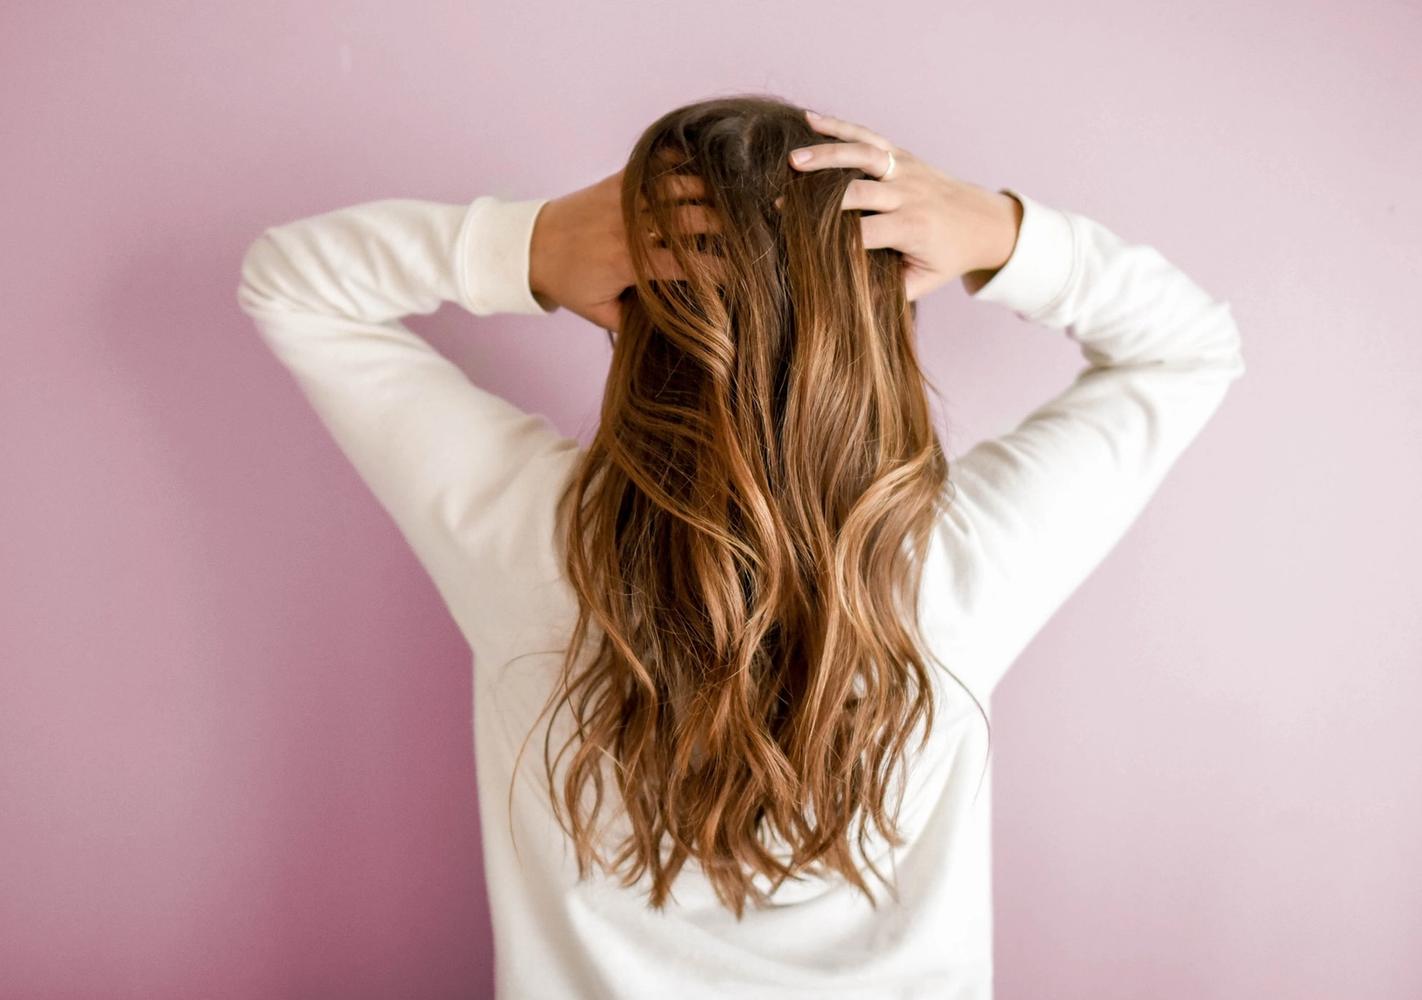 Kvinne med hair extensions tar seg i håret